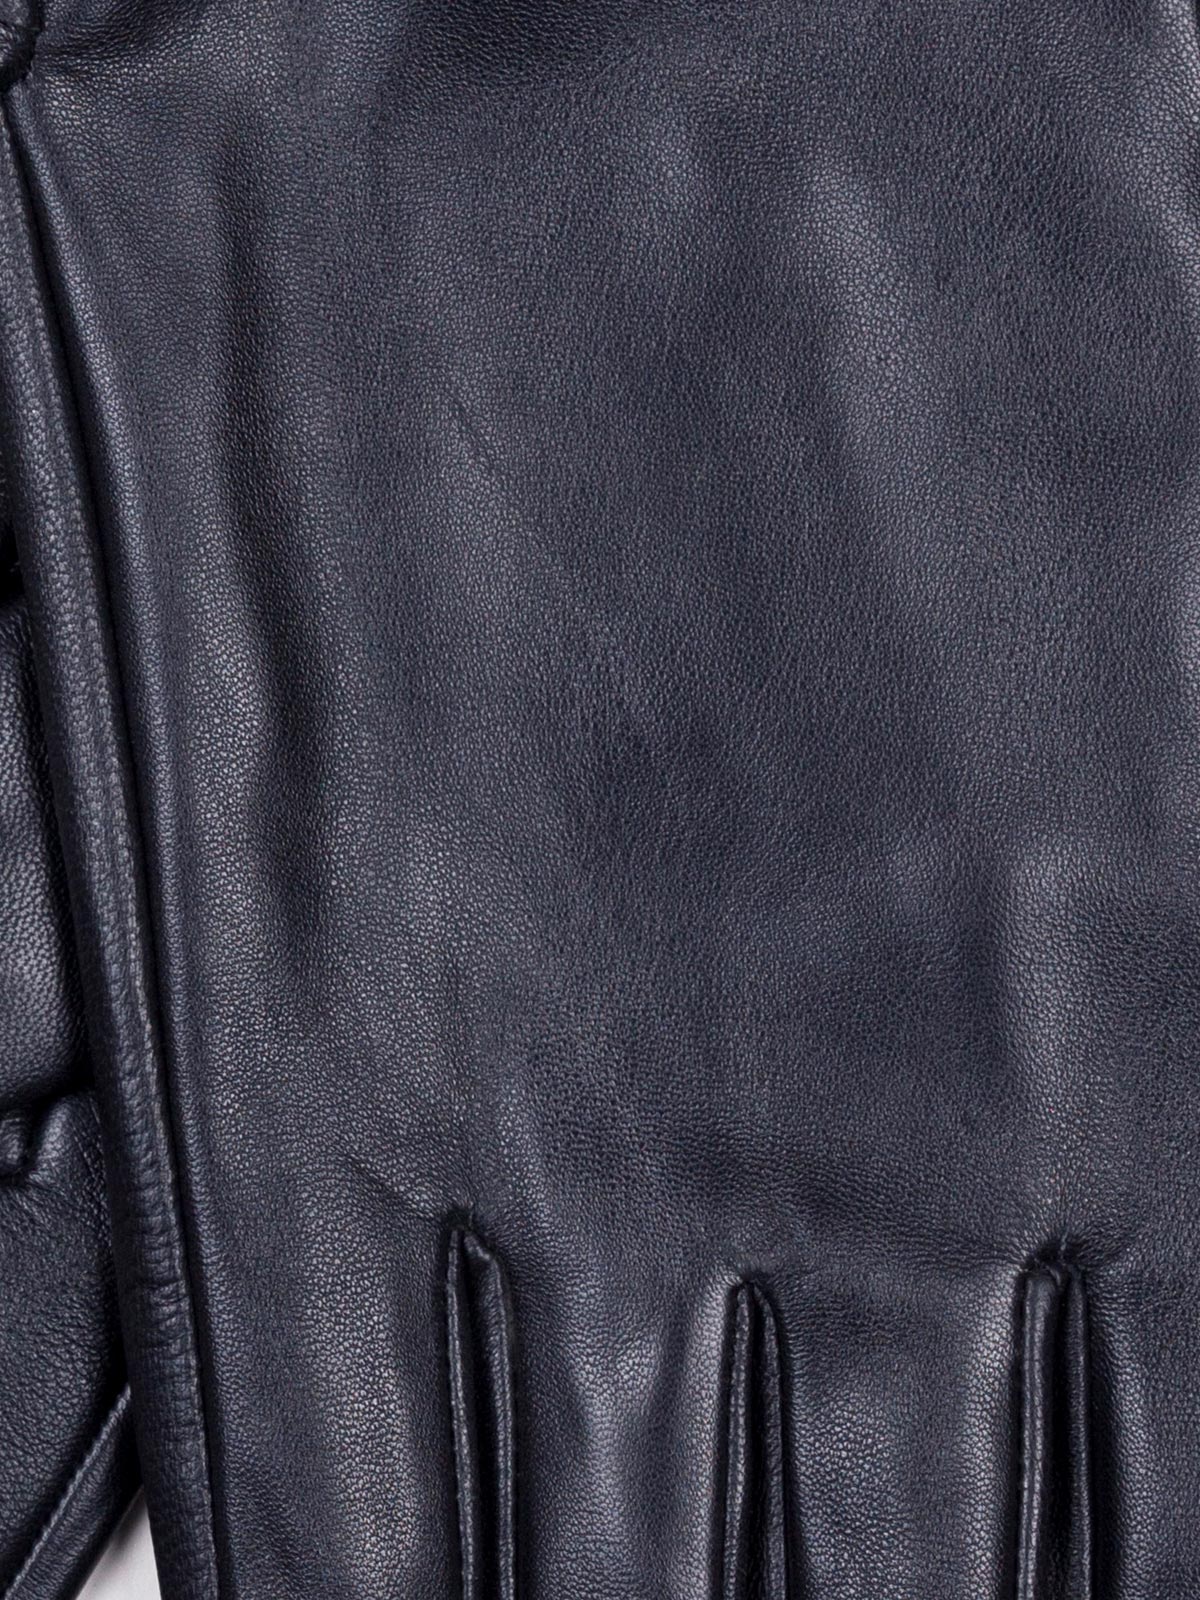  μαύρα γάντια από καθαρό δέρμα  - 10571 - € 31.50 img2